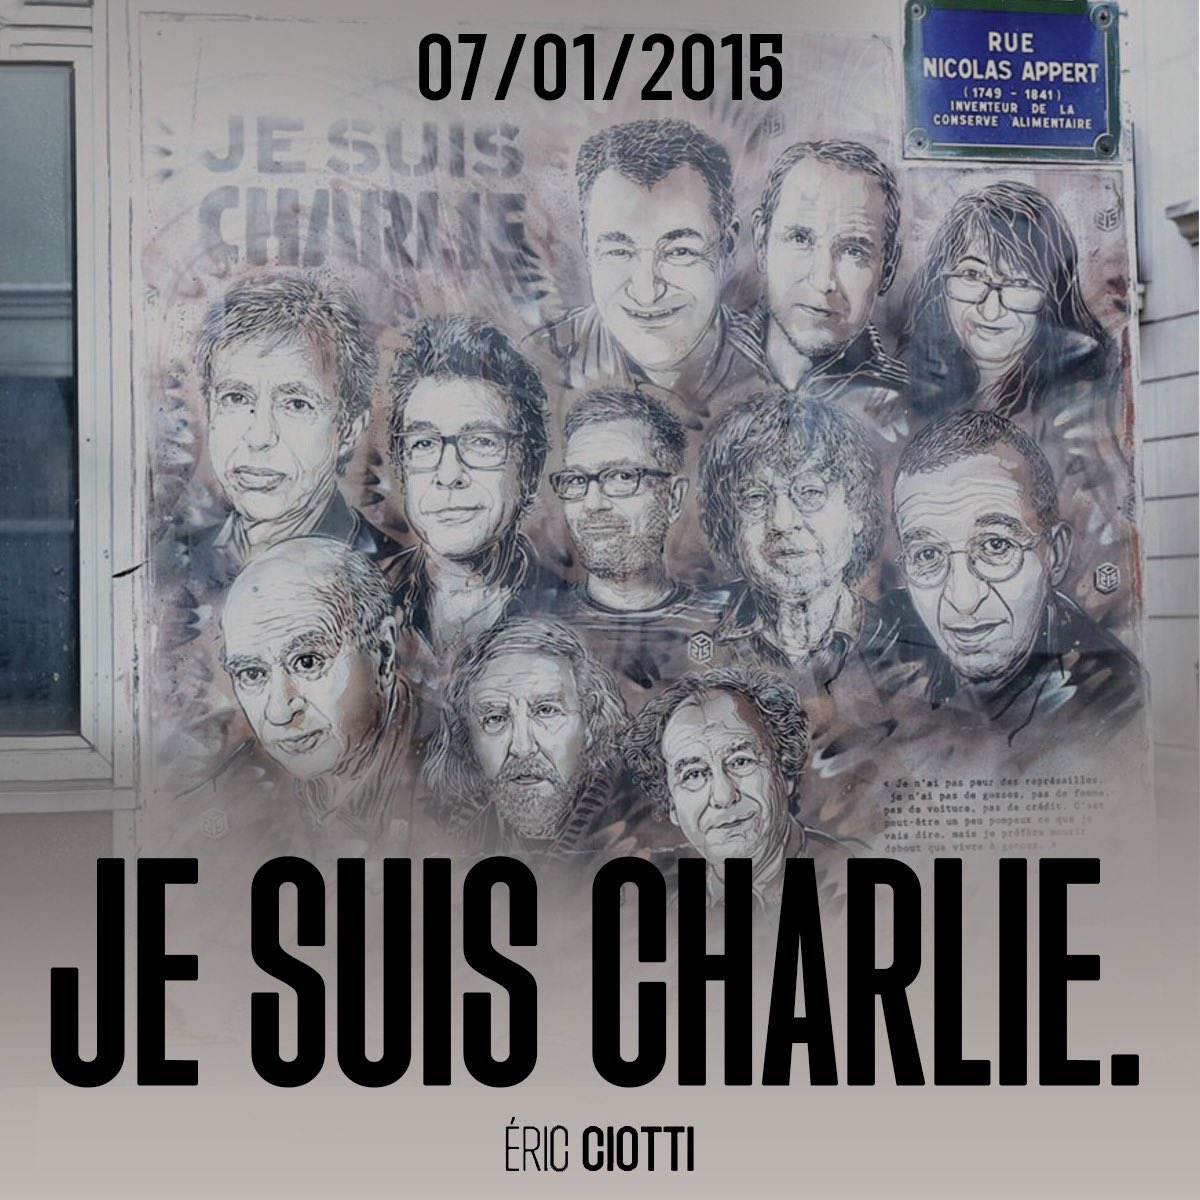 Le 7 janvier 2015, l’attentat terroriste islamiste de Charlie Hebdo causa la mort de 12 personnes. Ce jour-là, c’est notre liberté qui fut attaquée, c’est la France des Lumières que l’on a voulu faire taire. Cabu, Charb, Honoré, Tignous, Wolinski, Franck, Ahmed, Elsa, Frédéric,…